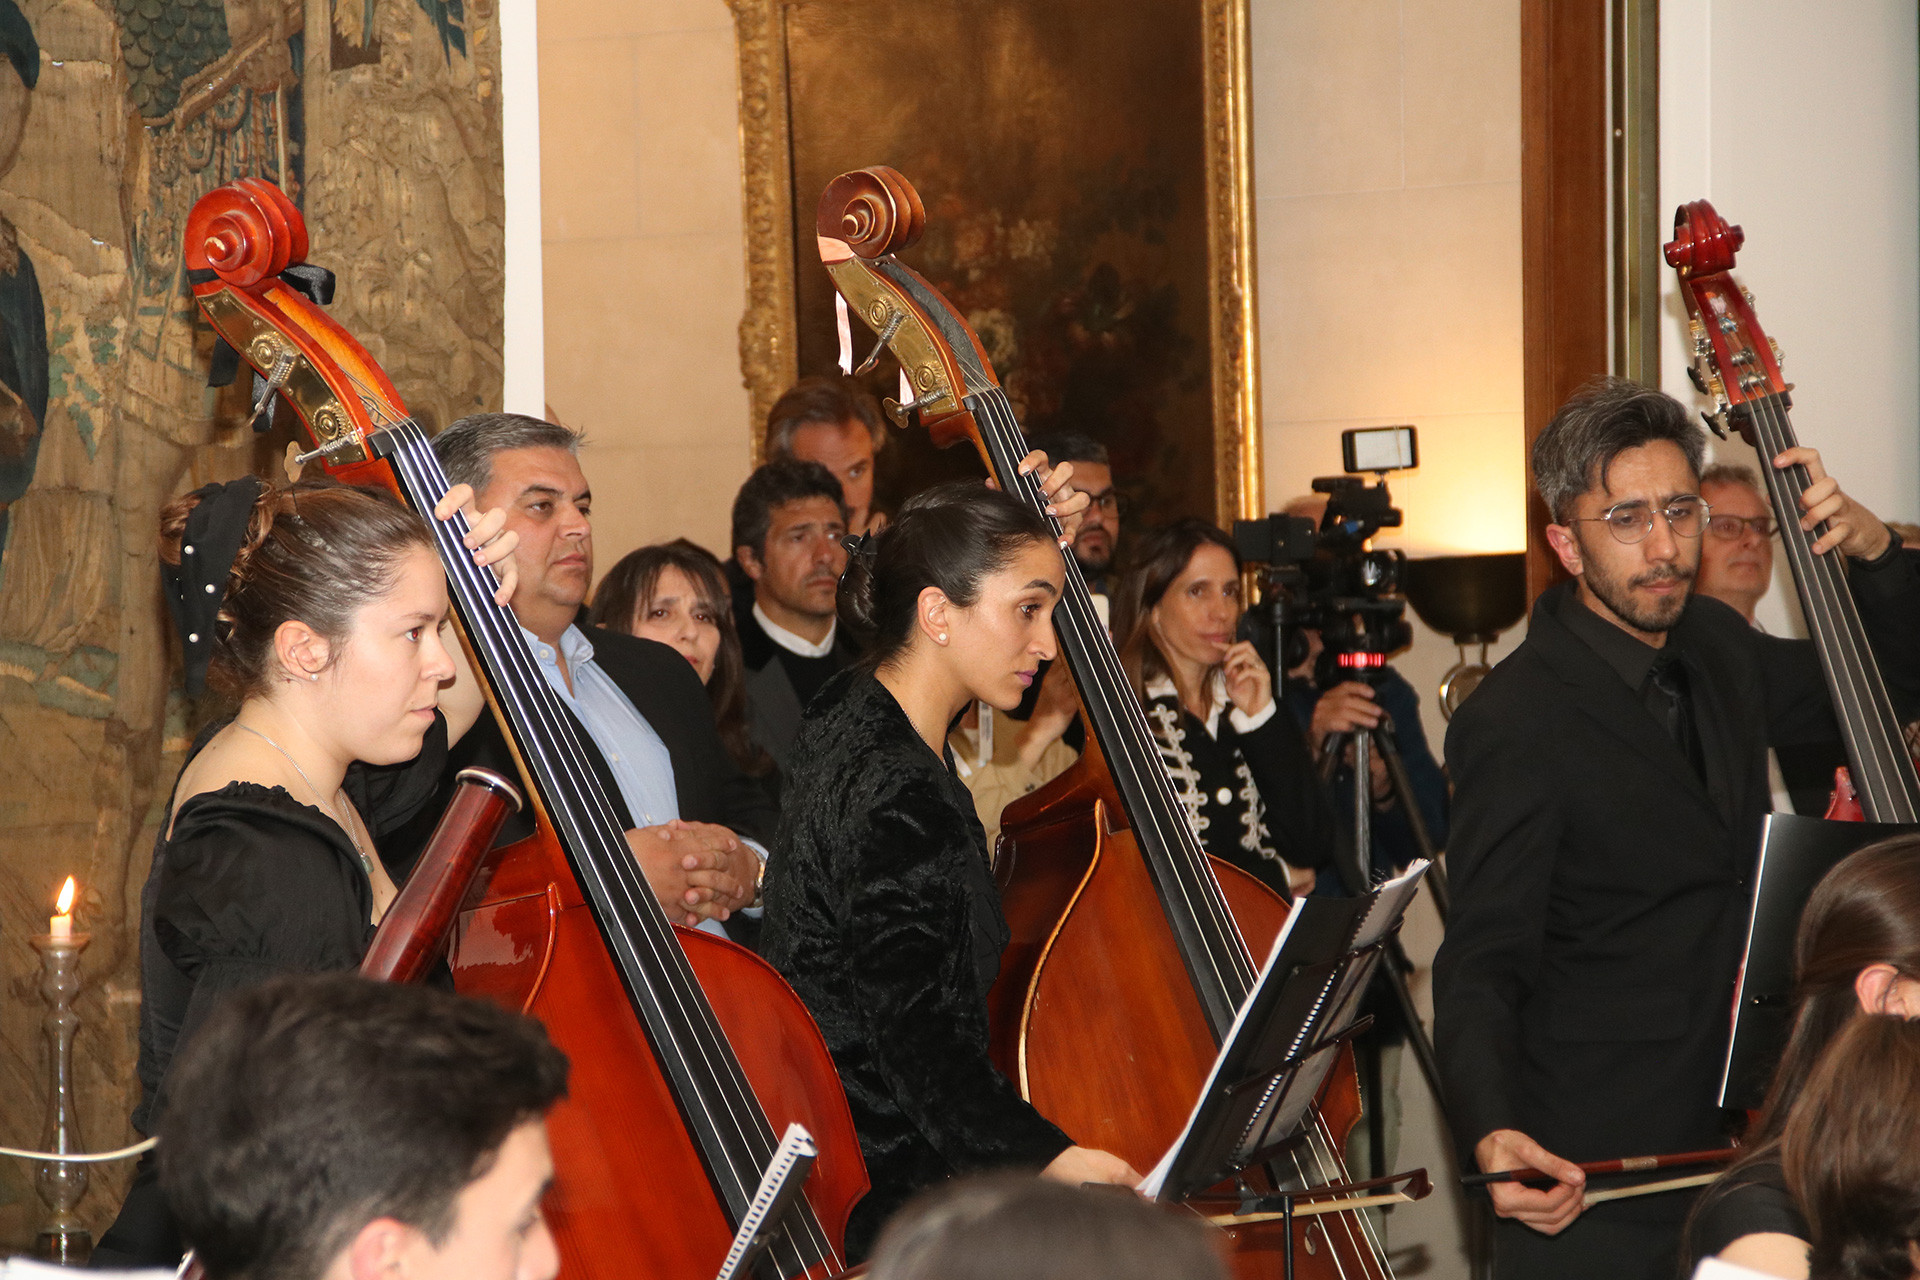 Finalizado el concierto, cada uno de los integrantes de la delegación recibió un diploma recordatorio de su paso por la ciudad de Buenos Aires, para finalizar el encuentro con un brindis 


